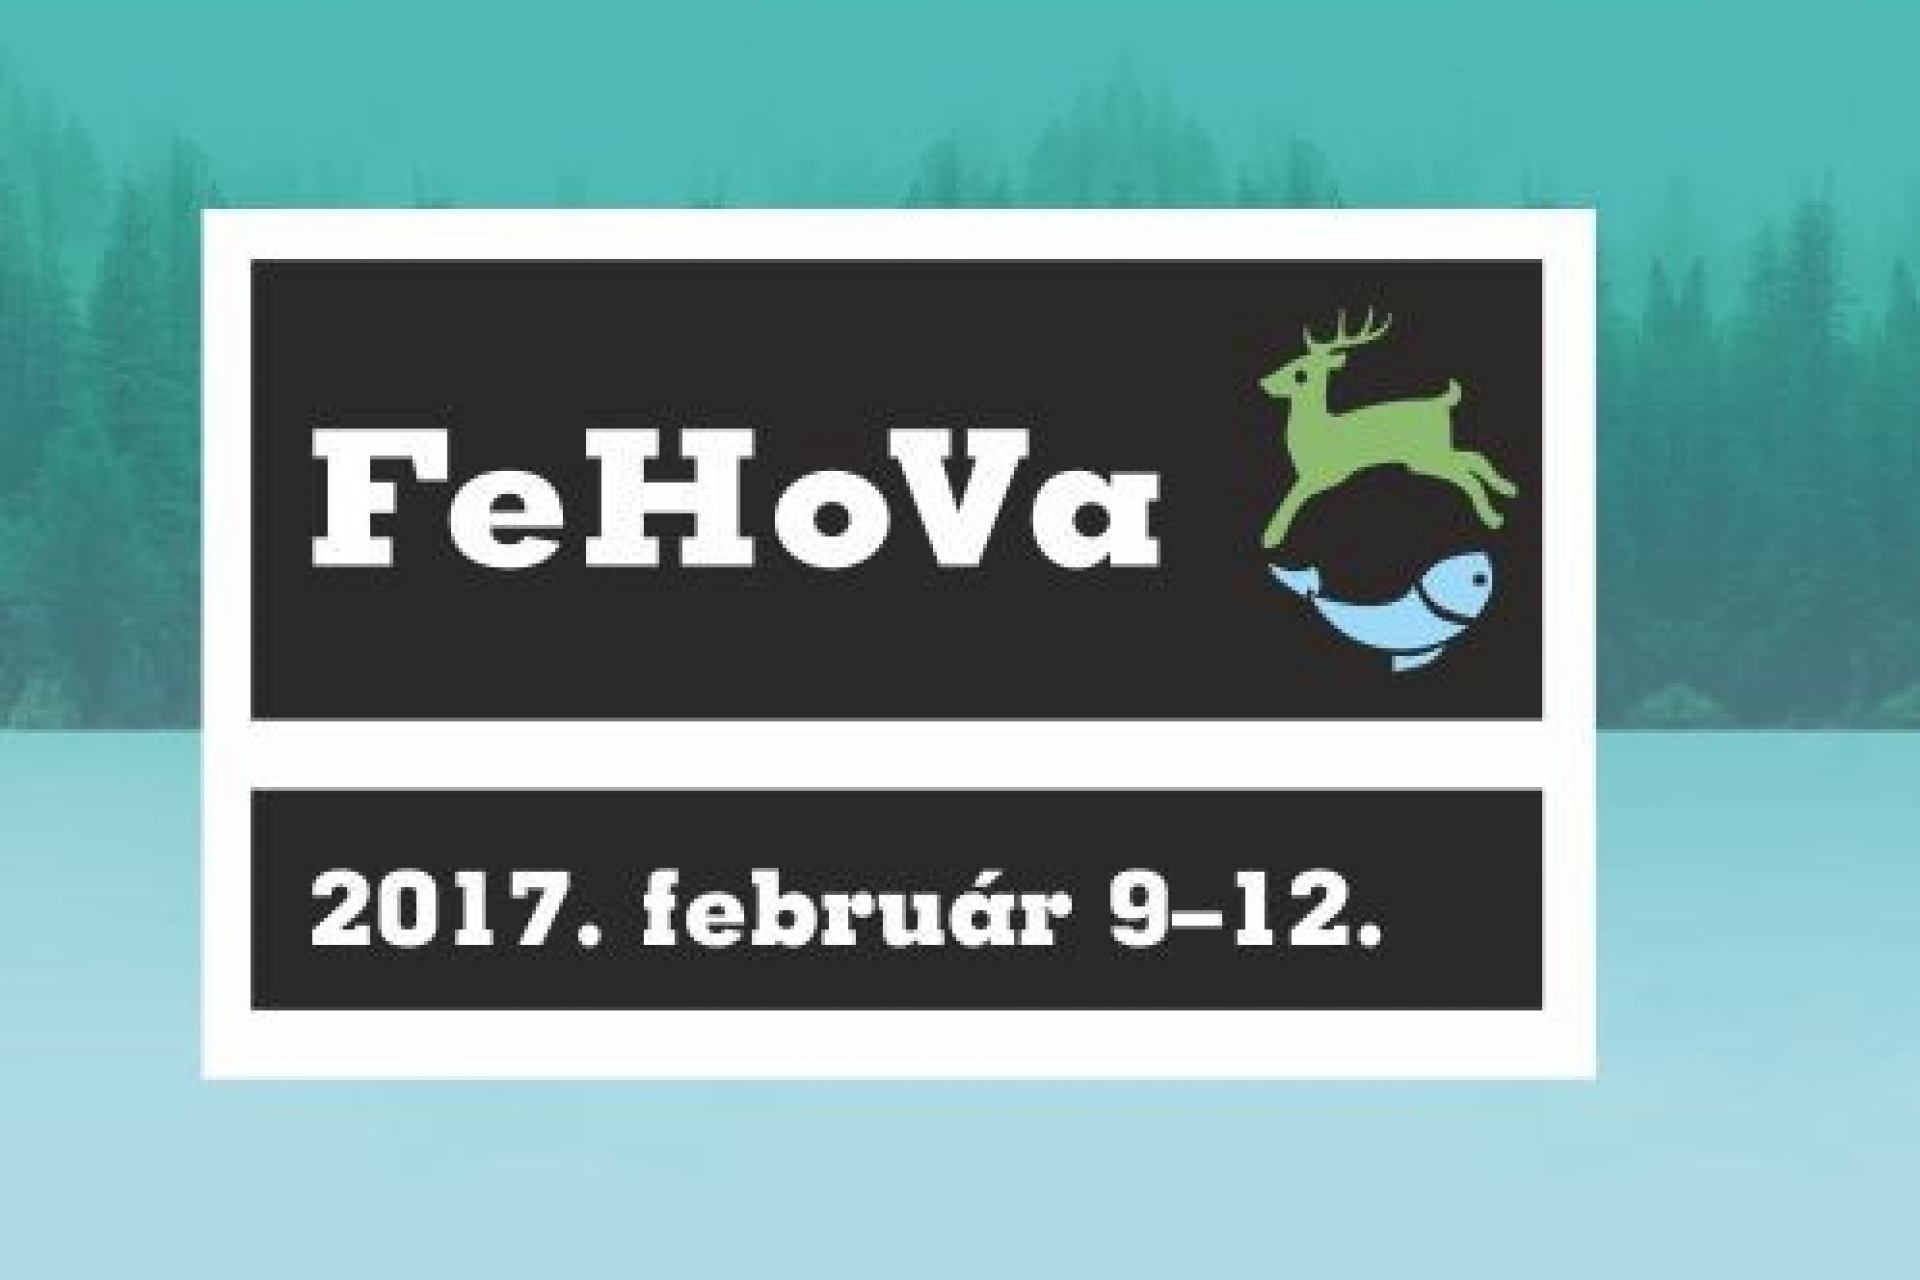 Jövő héten végre ismét FeHoVa!